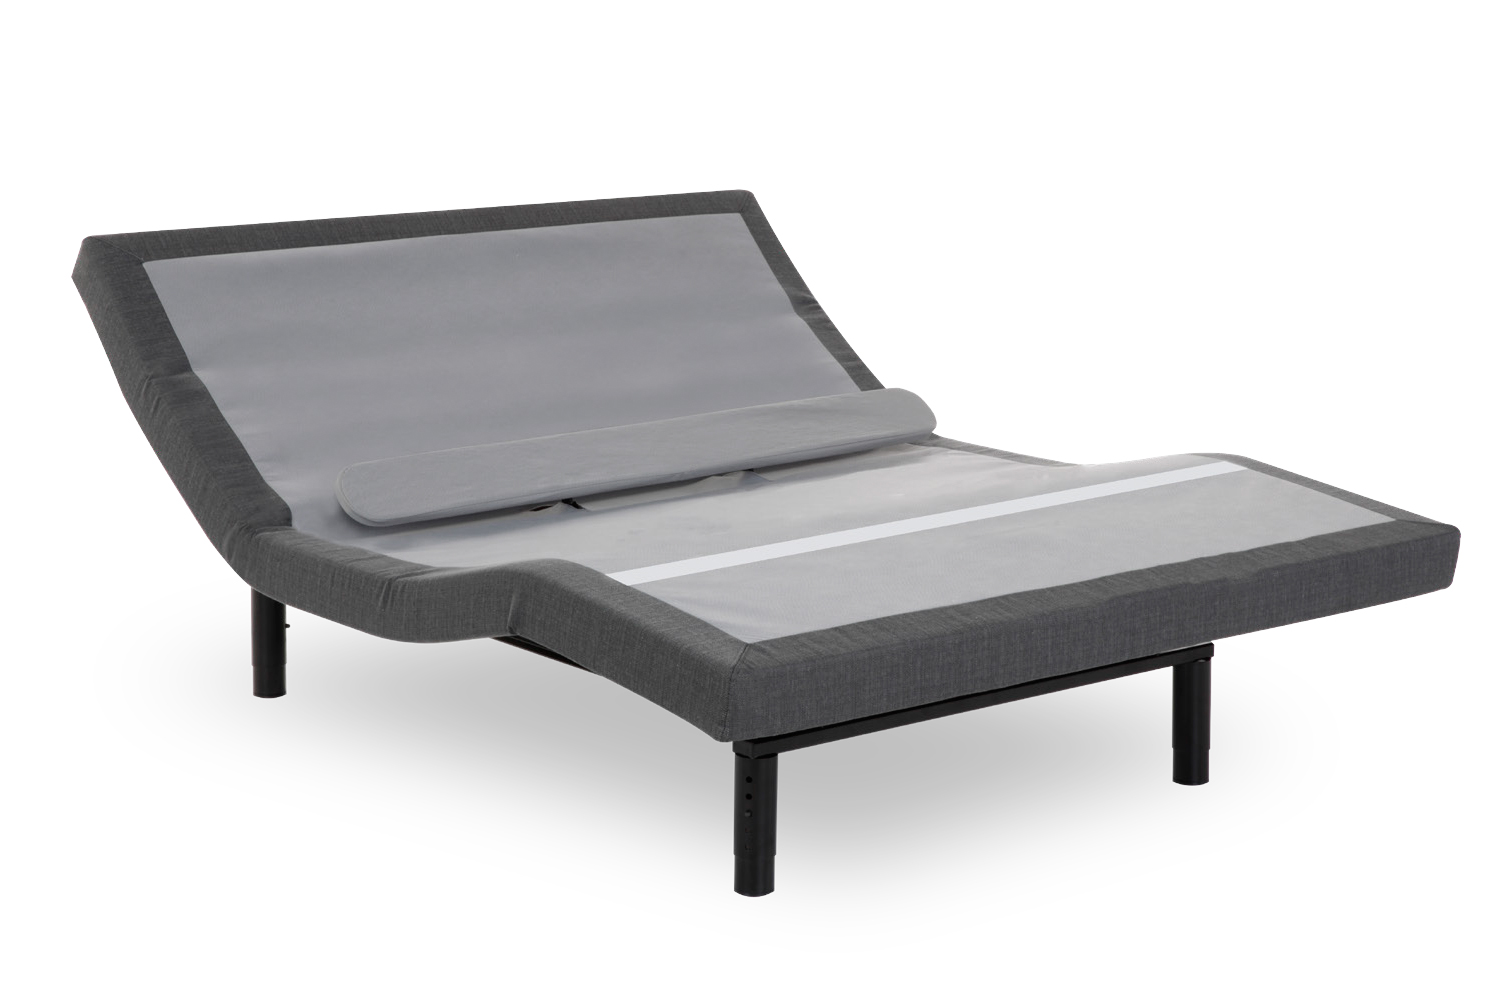 prodigy 2.0 adjustable bed motorized base